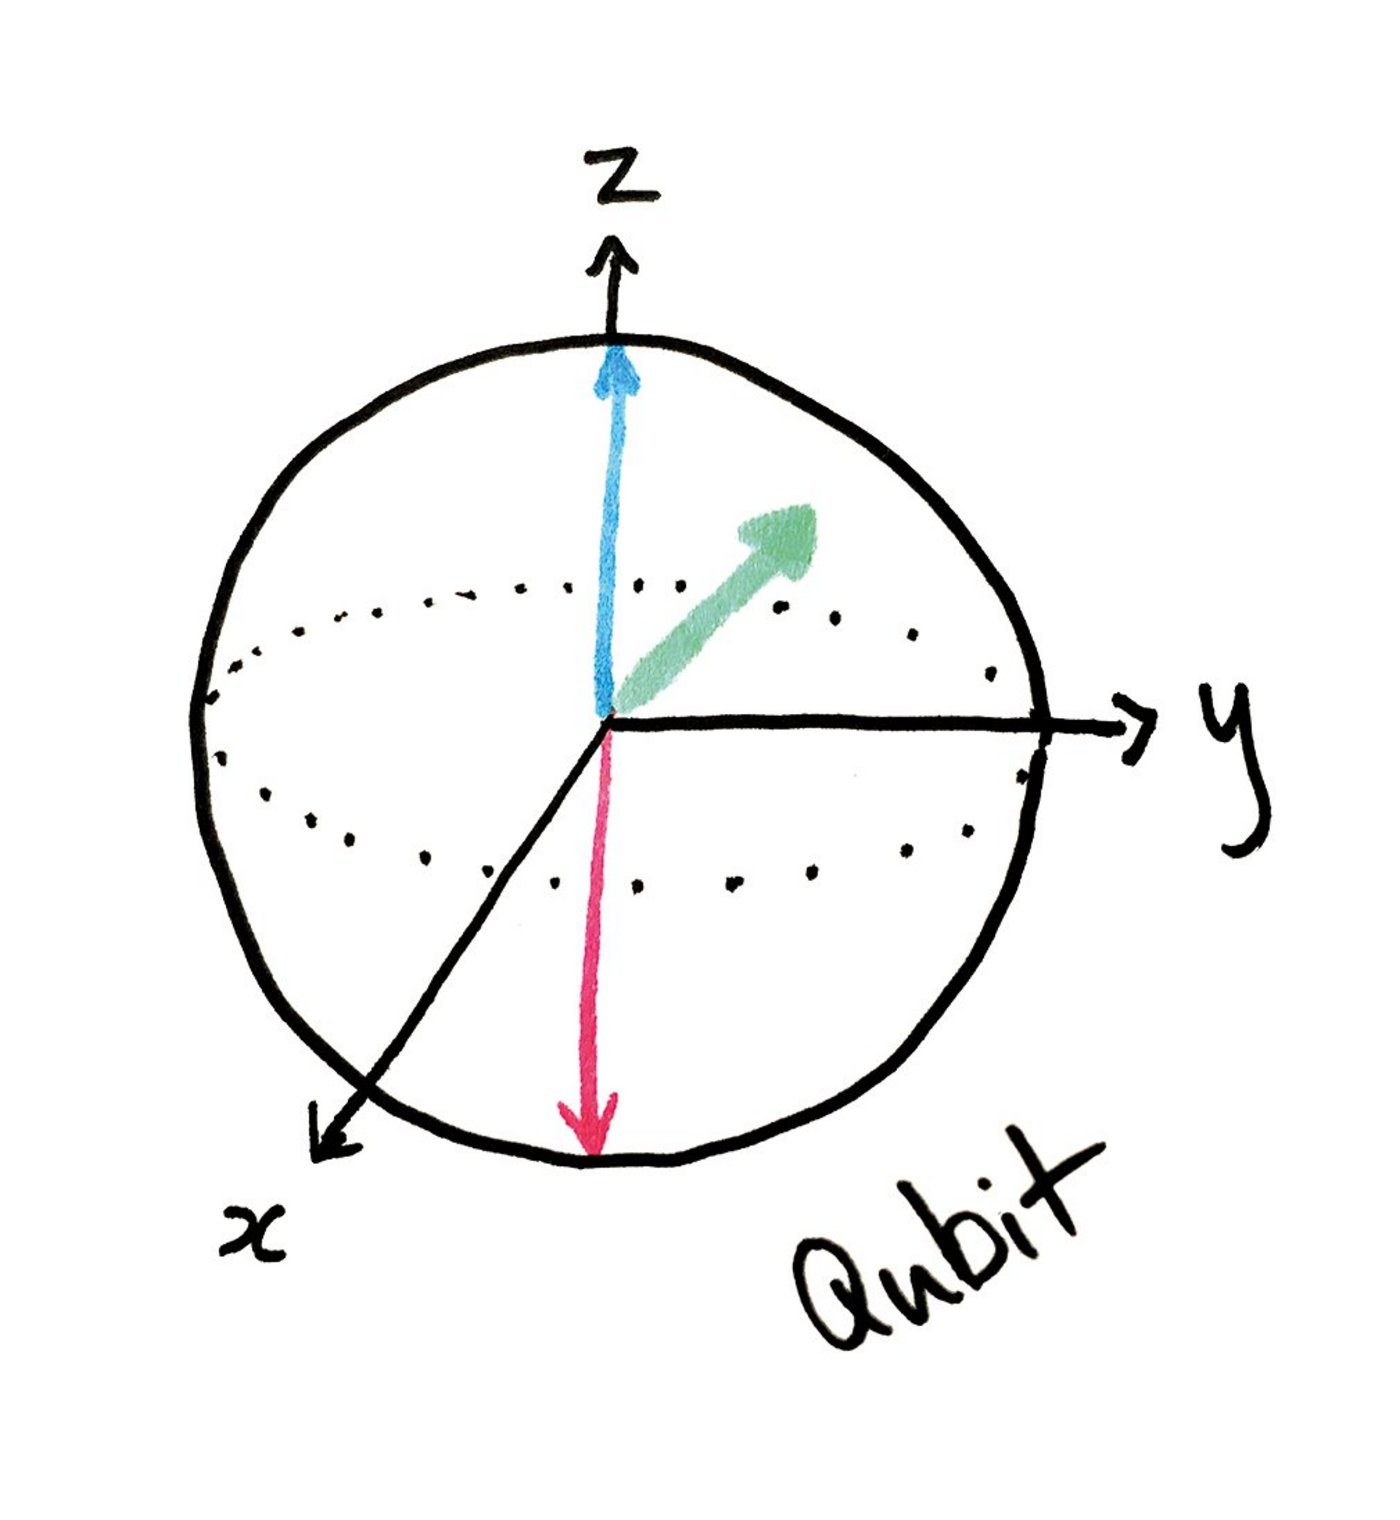 Geometrische Zeichnung eines Qubits